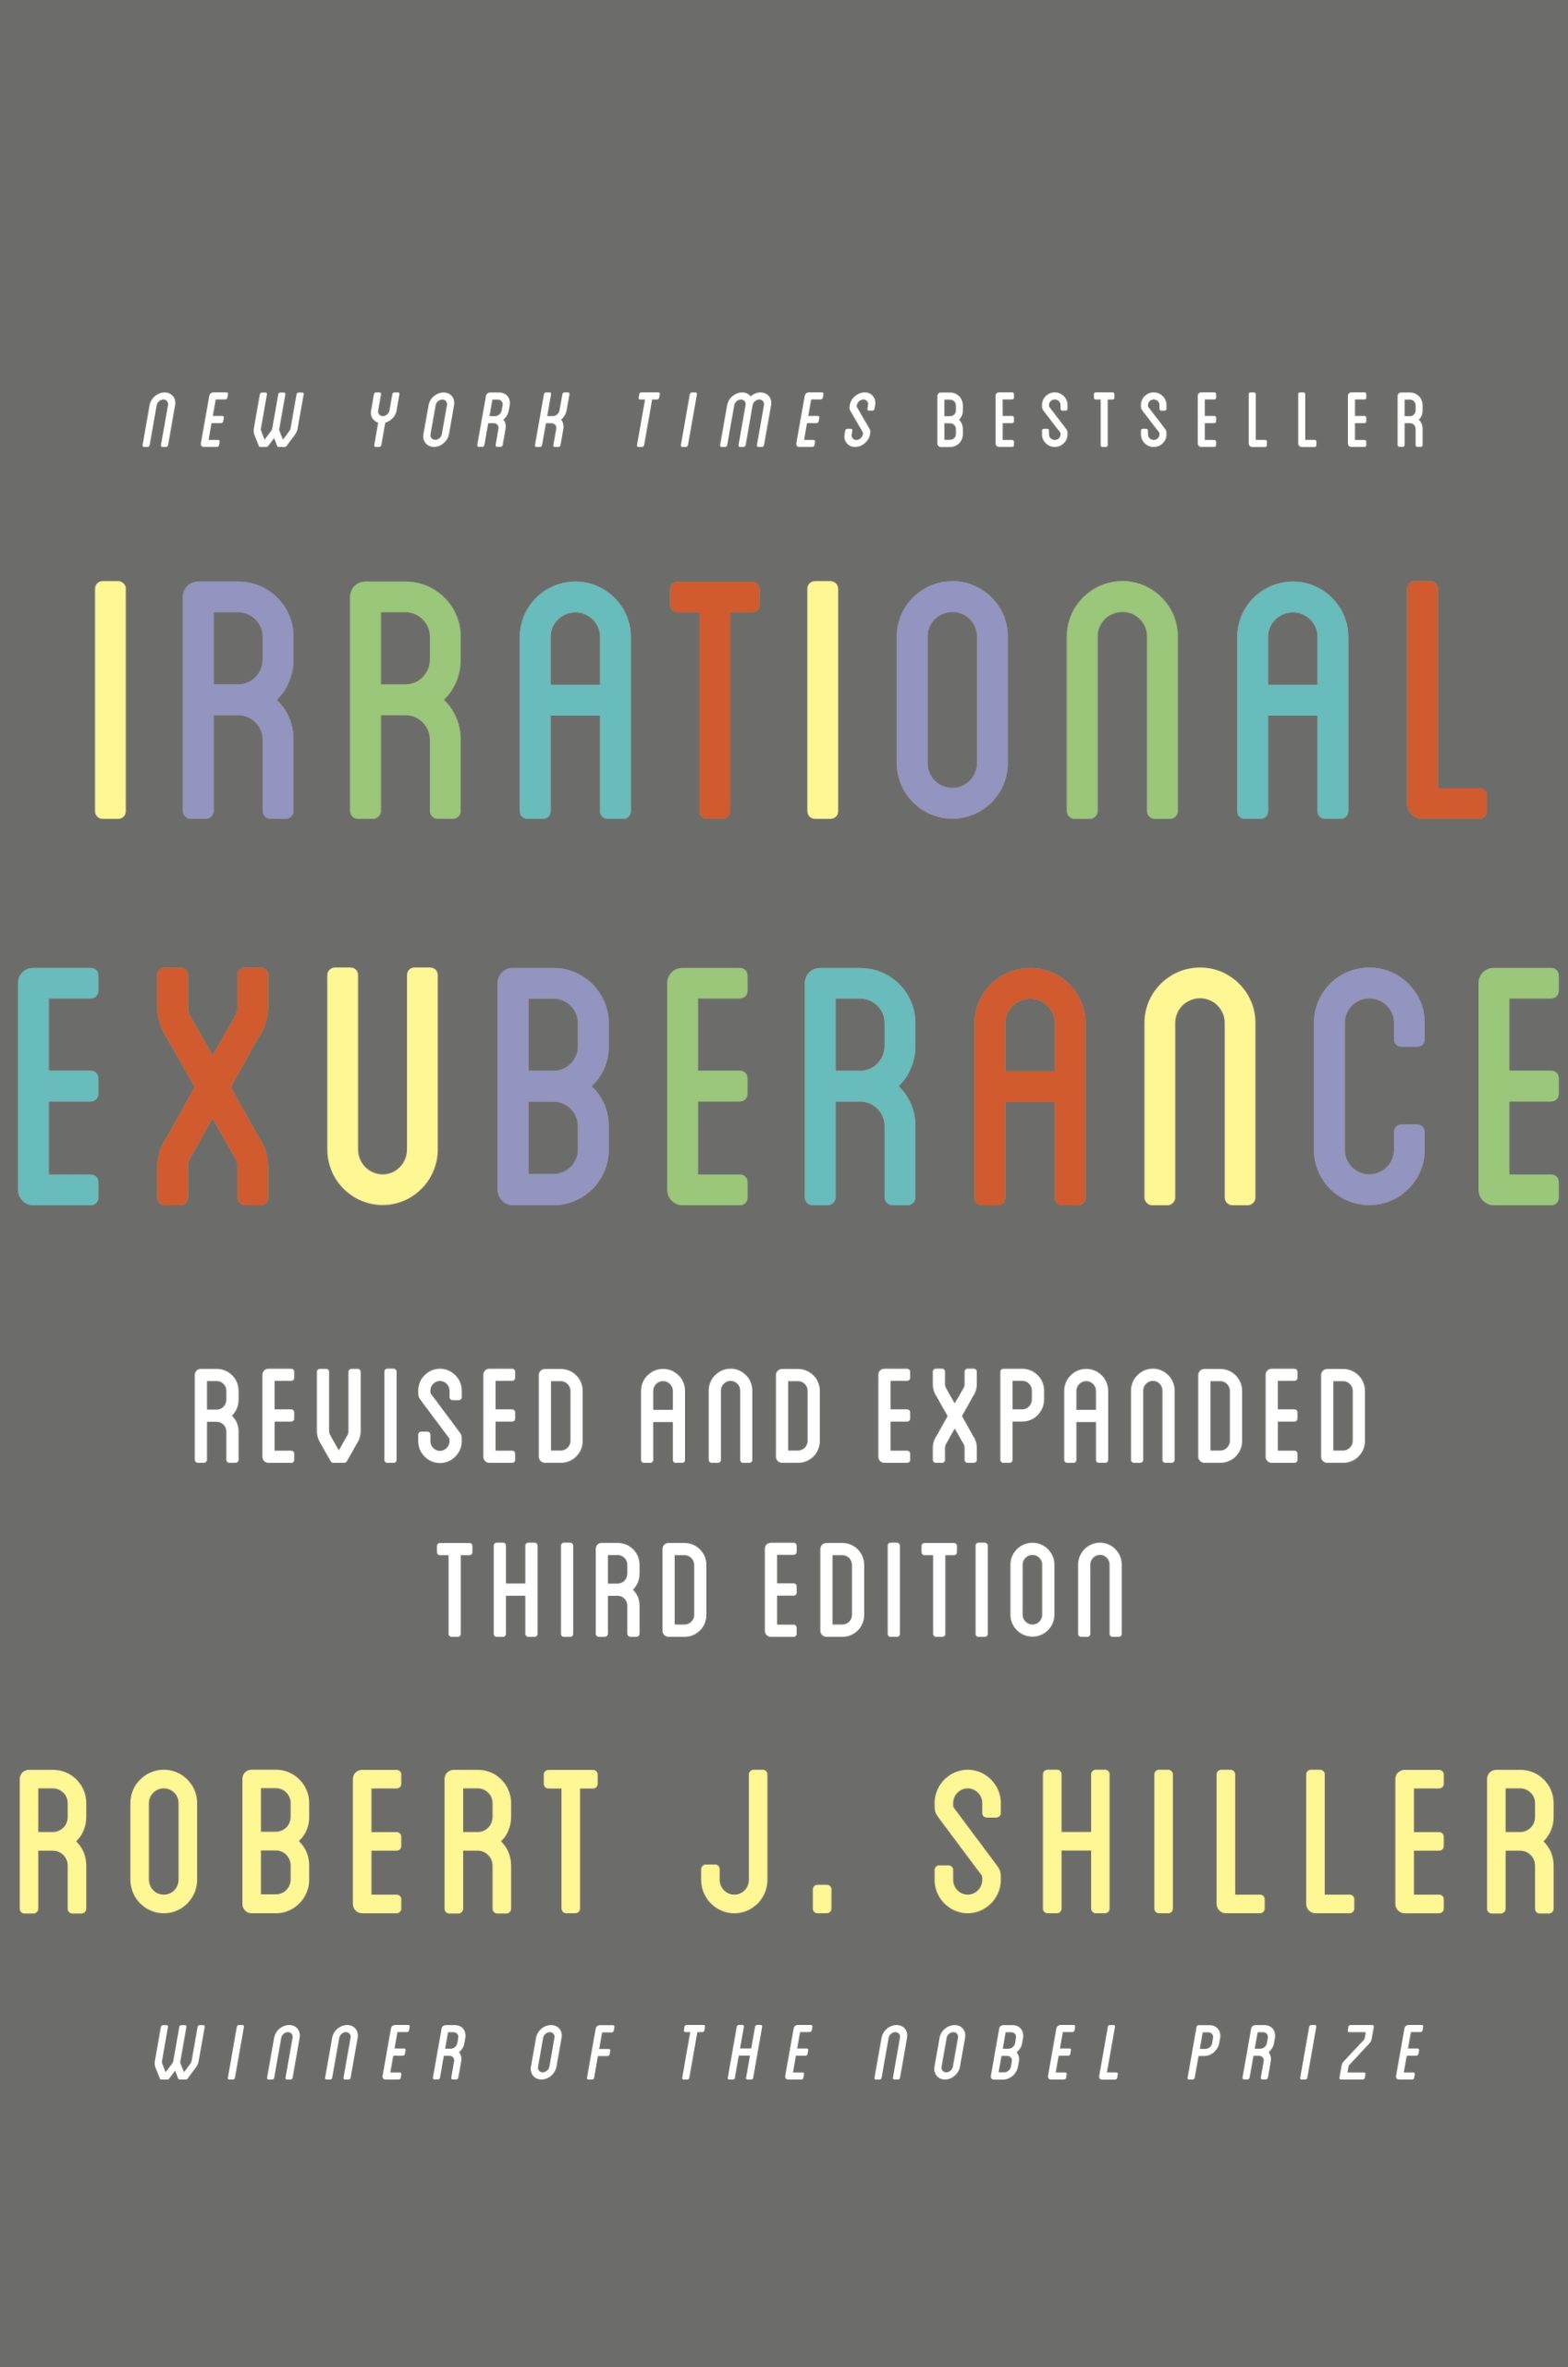 Irrational Exuberance — Robert Shiller’s modern classic